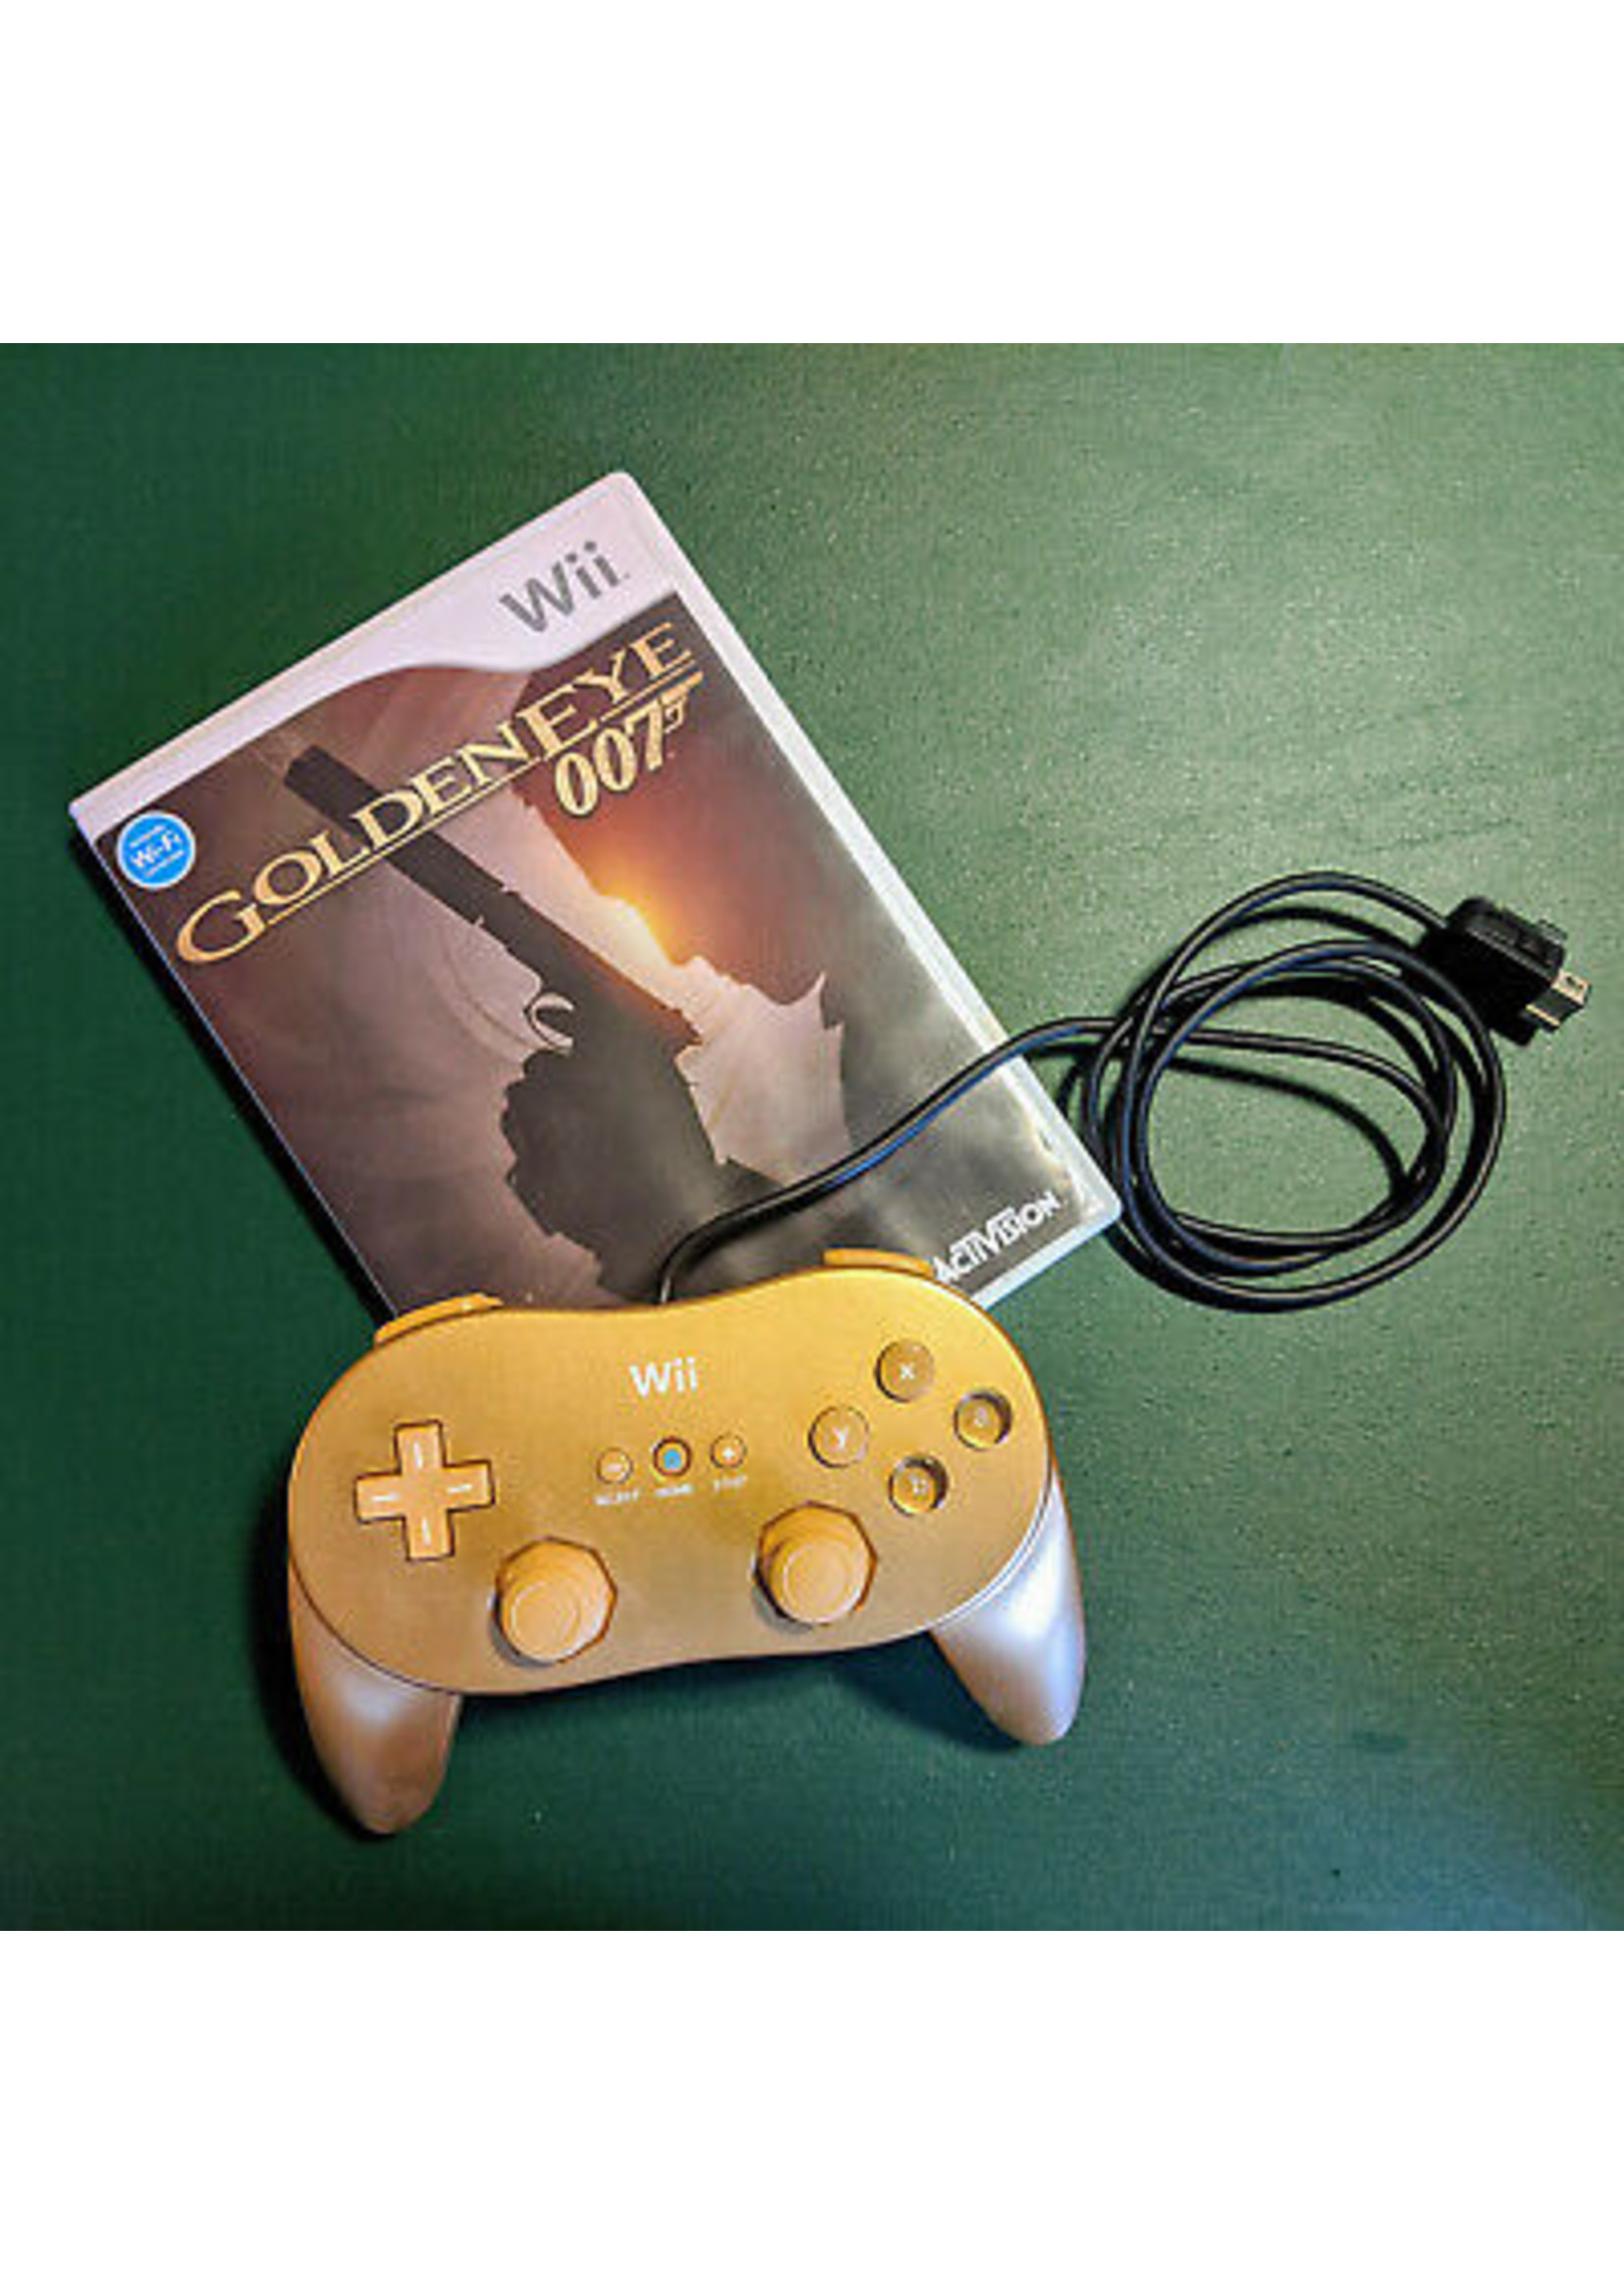 GoldenEye 007 ROM Download - Nintendo Wii(Wii)